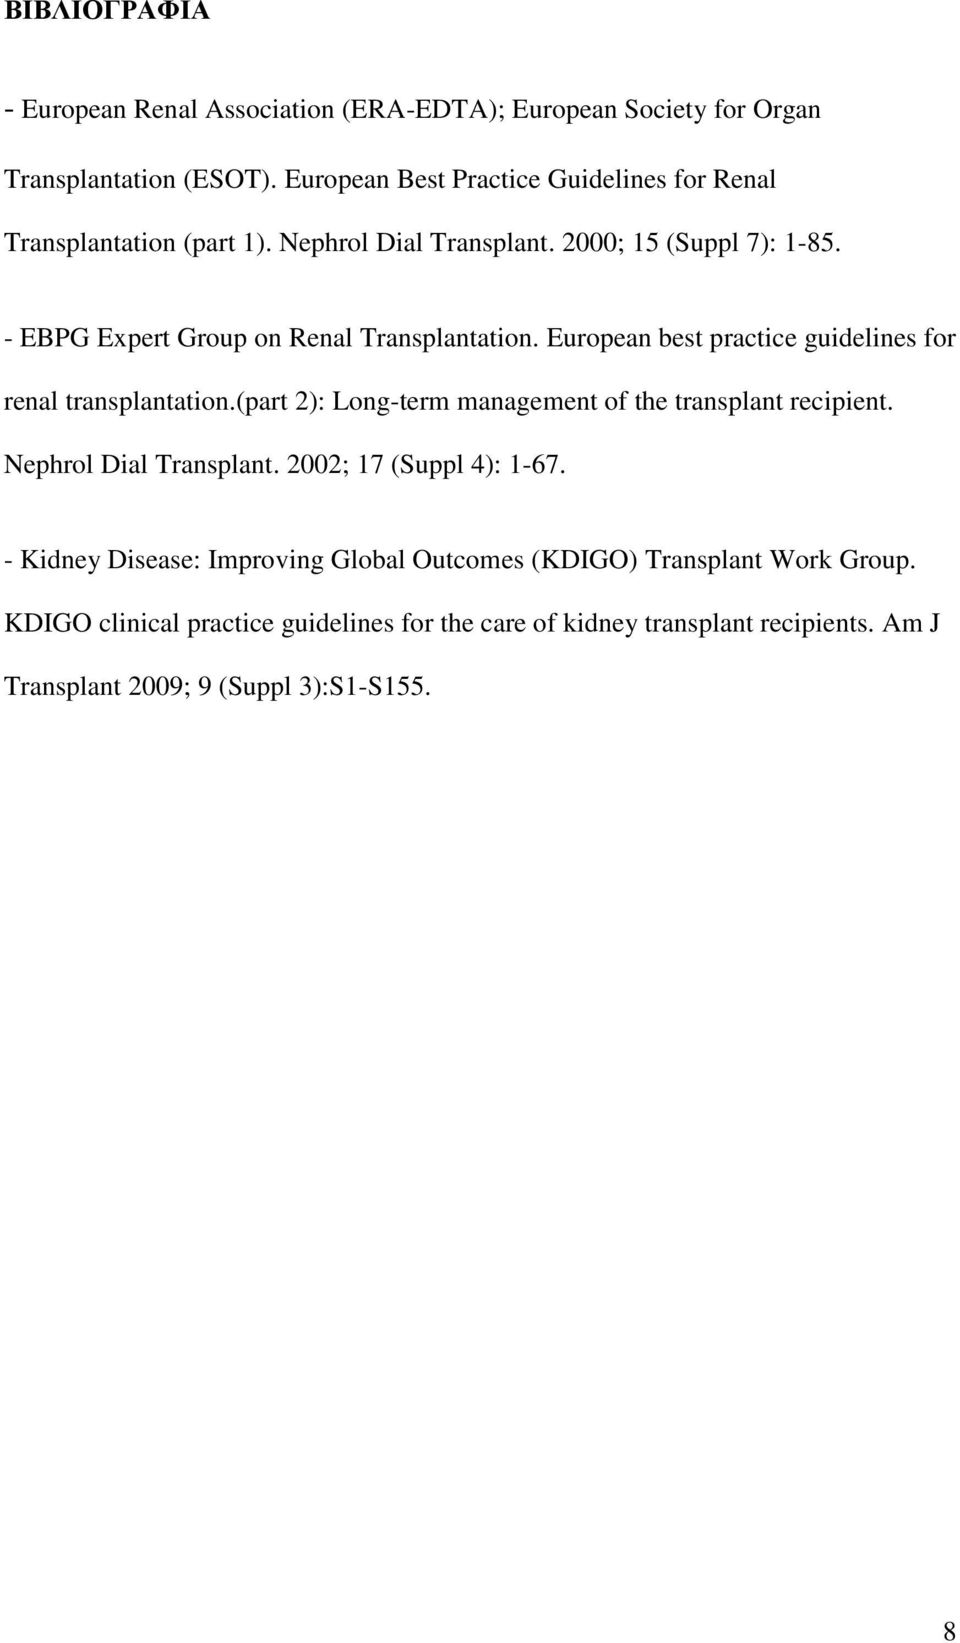 - EBPG Expert Group on Renal Transplantation. European best practice guidelines for renal transplantation.